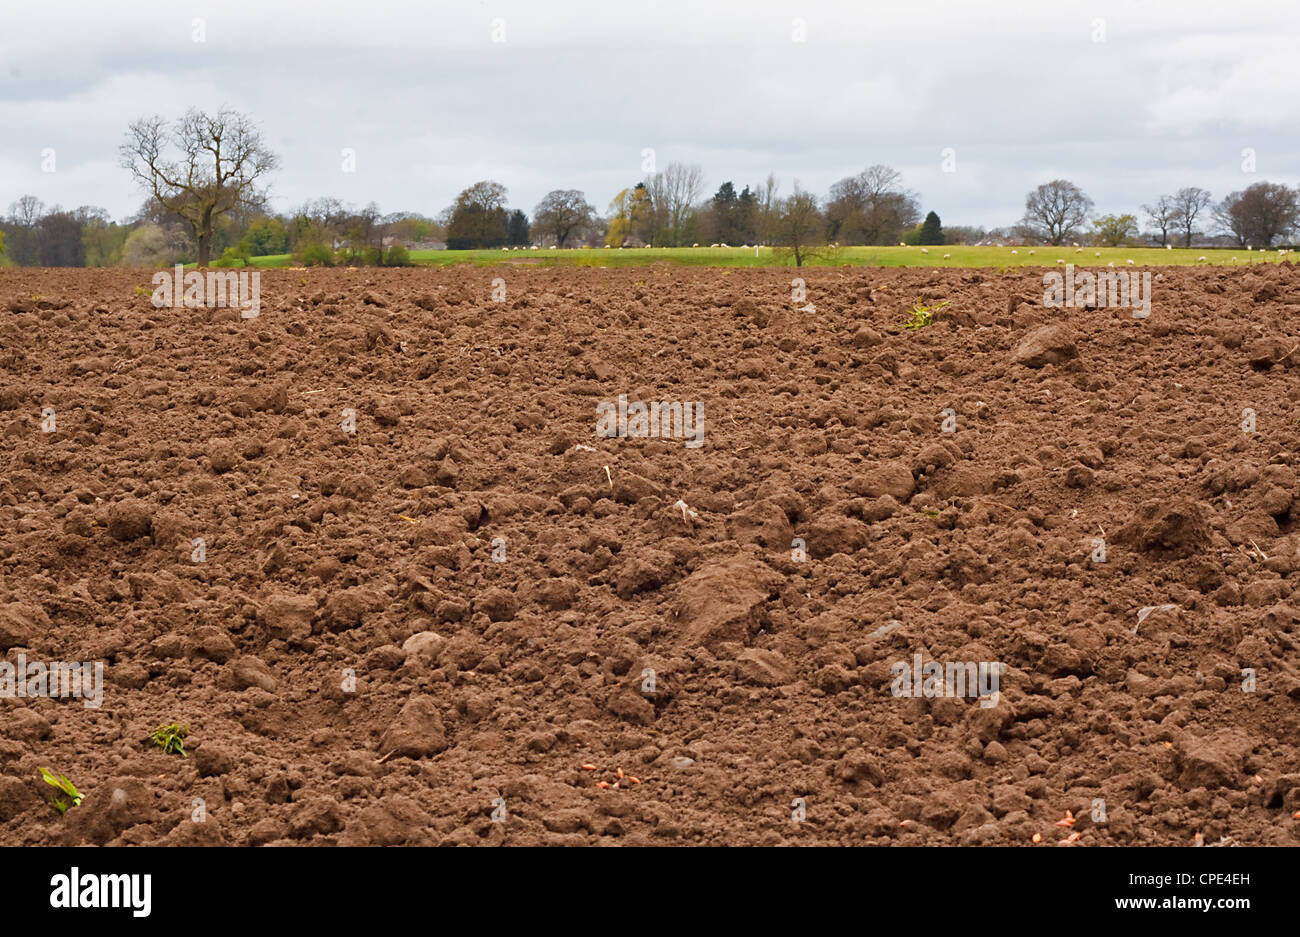 Fraîchement creusée et récemment un champ agricole ensemencée, bonne base pour l'agriculture Banque D'Images